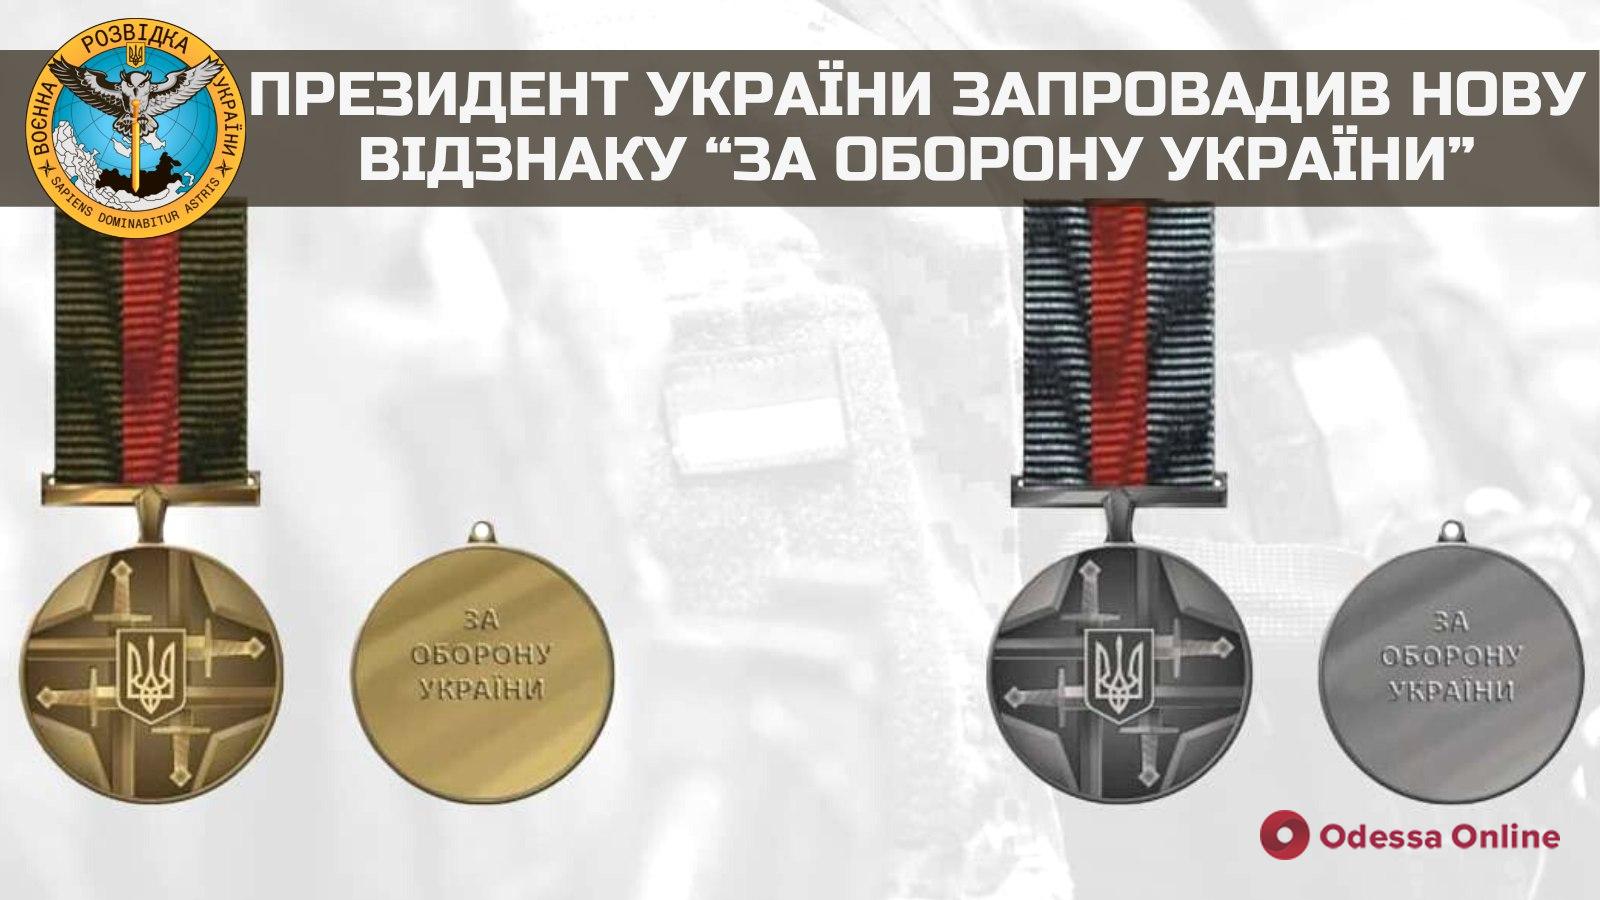 «За оборону Украины»: Владимир Зеленский ввел новую награду